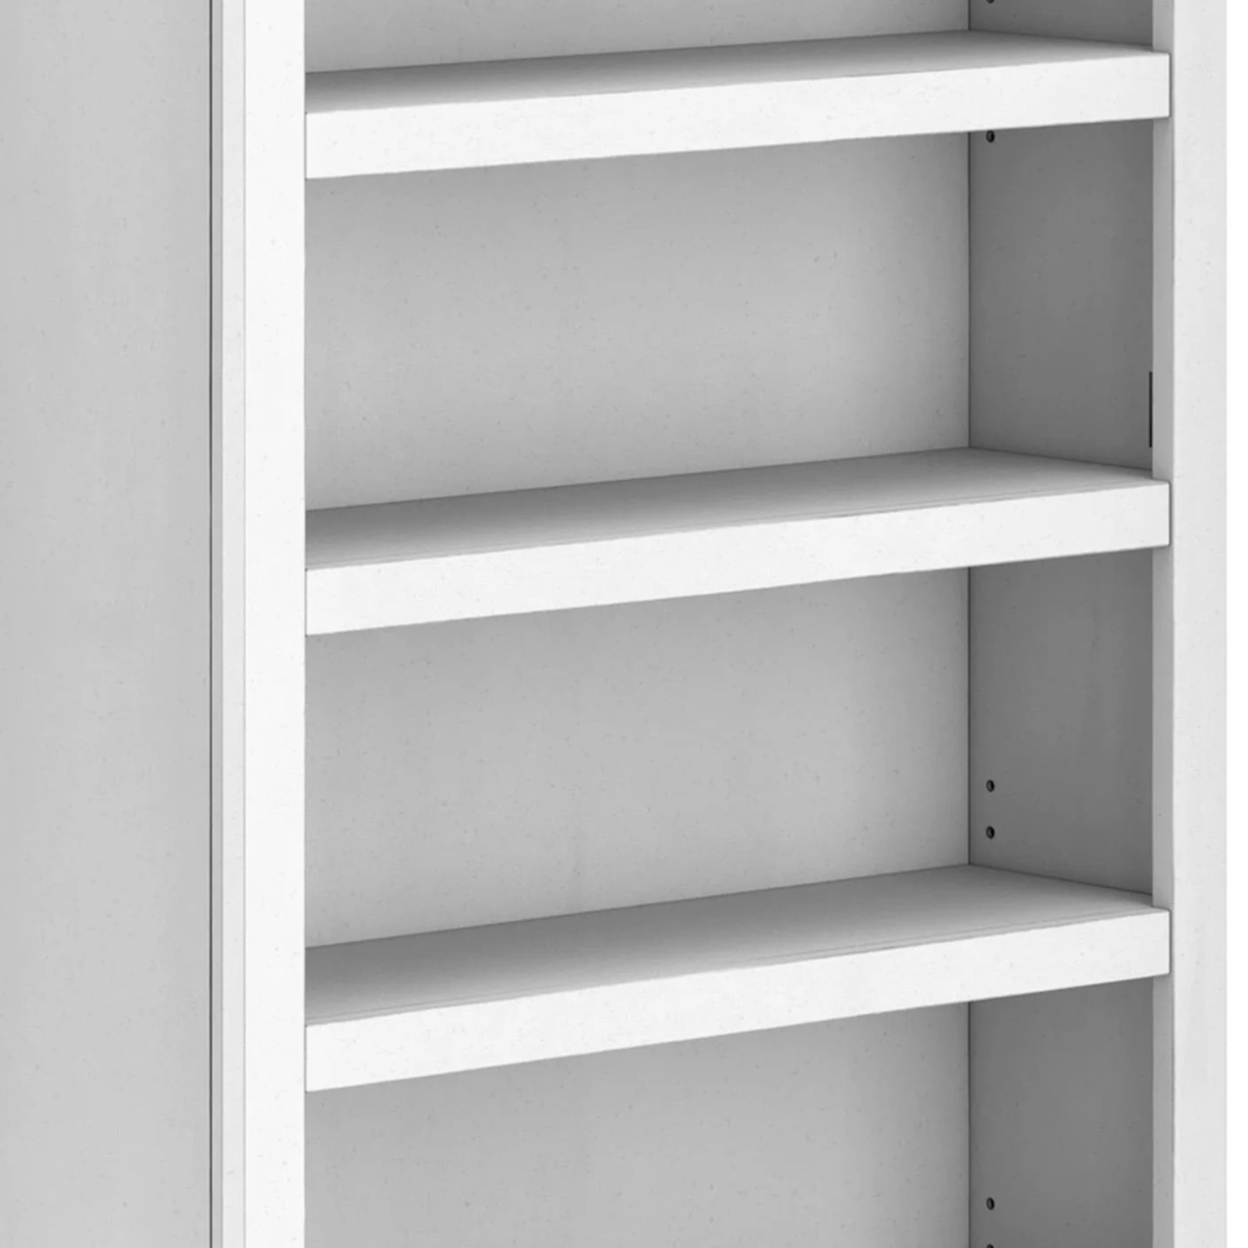 75 Inch Freestanding Bookcase, Adjustable Shelves, Whitewashed Finish- Saltoro Sherpi